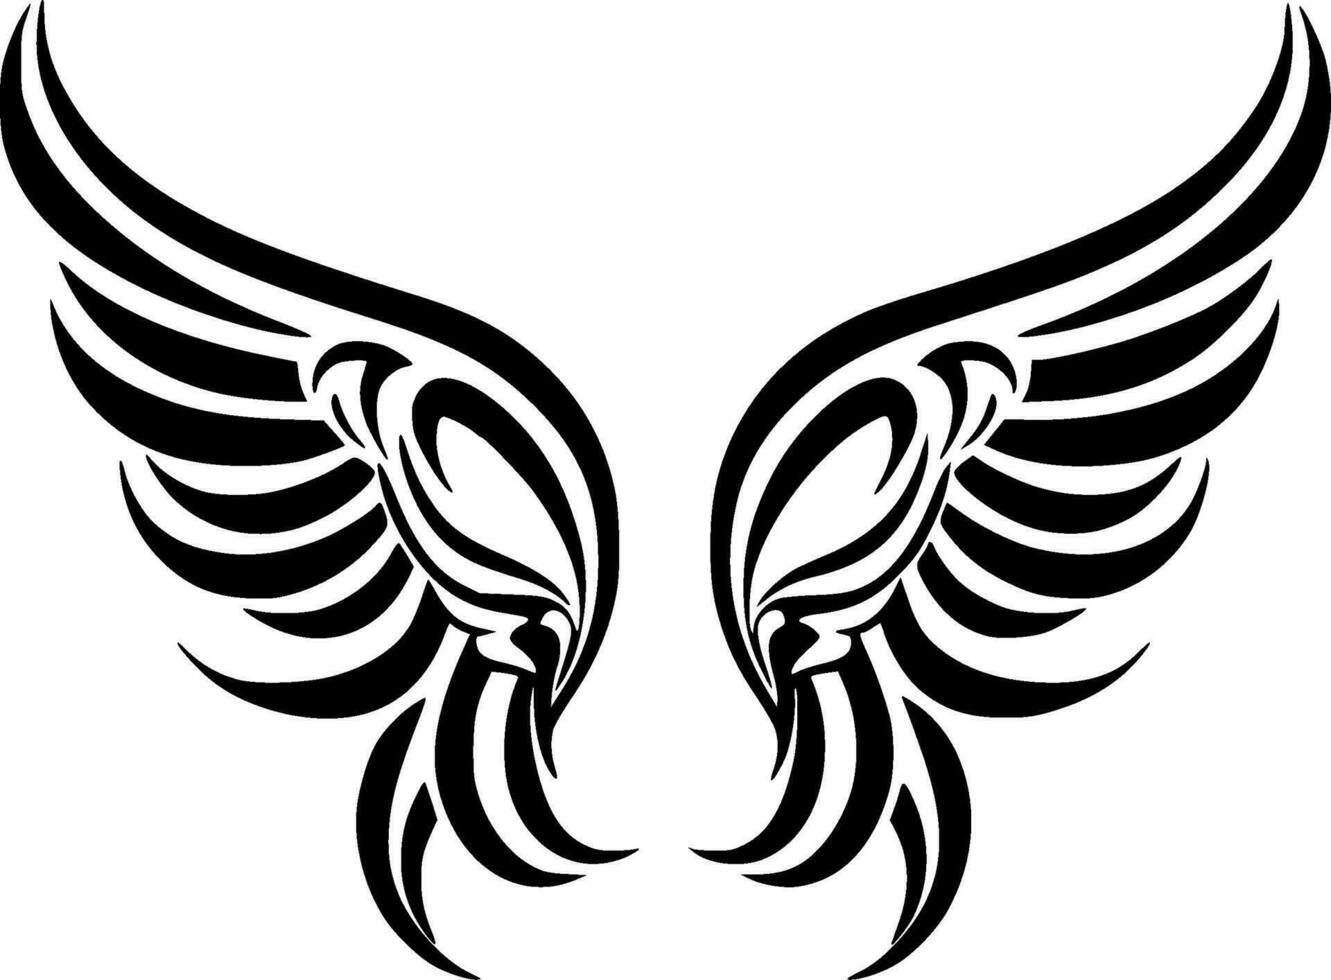 ailes, noir et blanc vecteur illustration